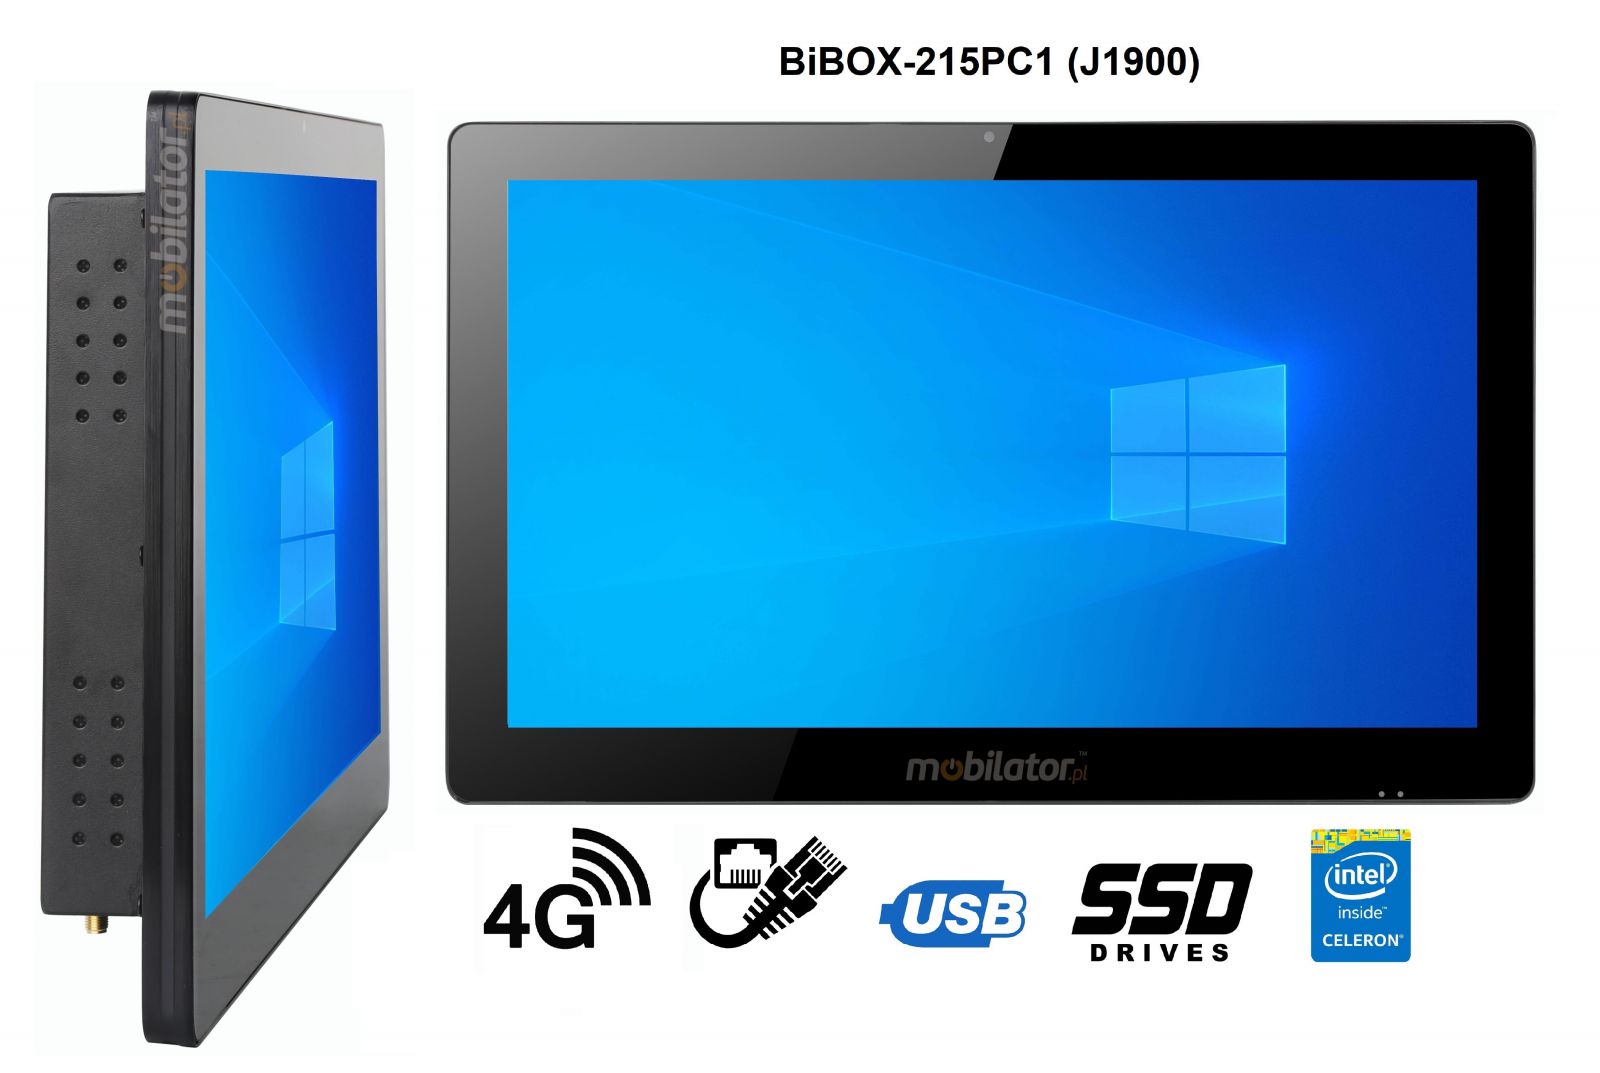 BiBOX-215PC1 (J1900) v.4 - Wzmocniony panel komputerowy z IP65 (odporno woda i py) z dyskiem SSD 256 GB, technologi 4G oraz WiFi